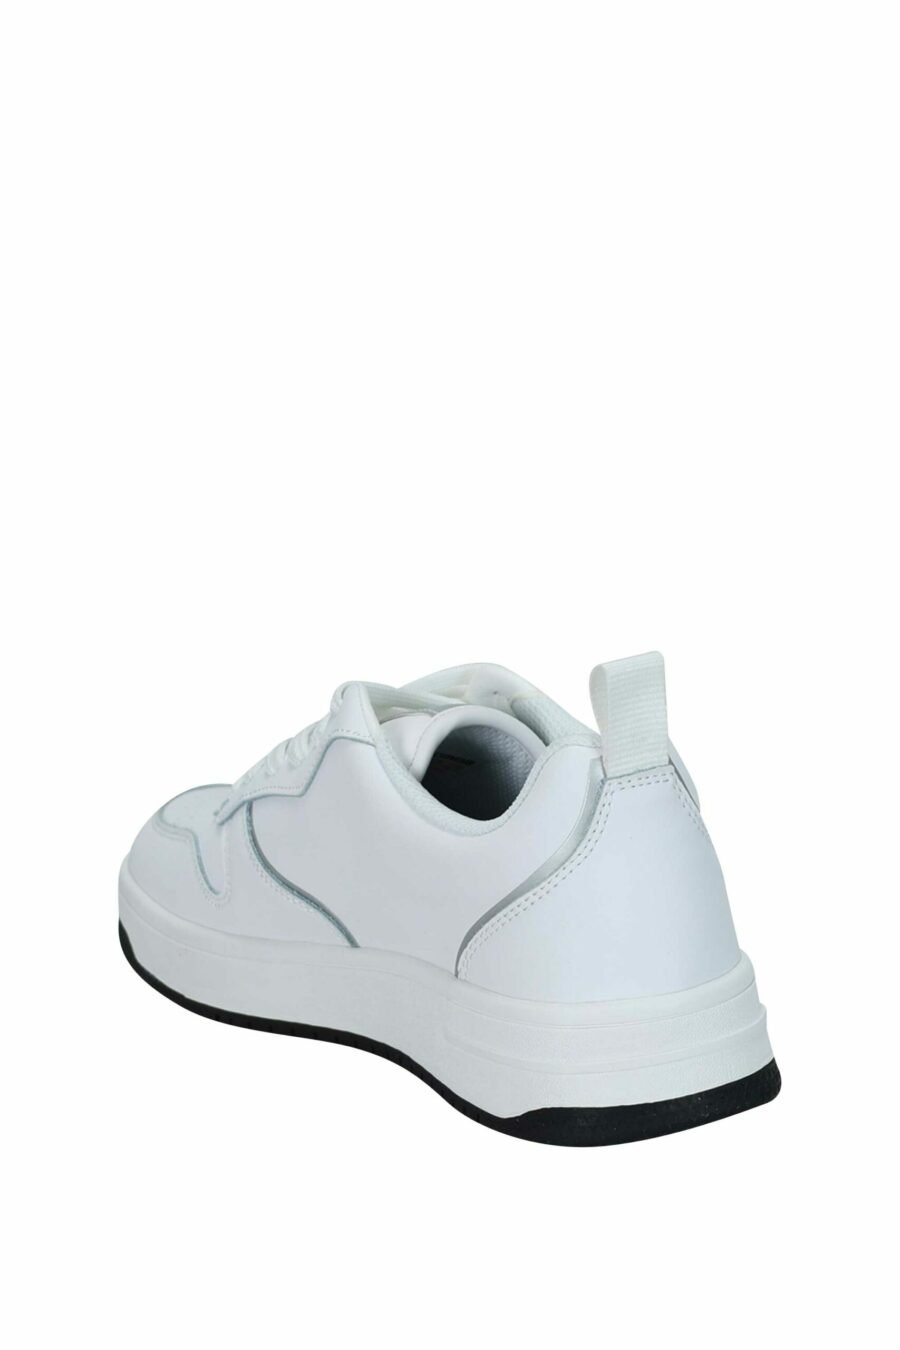 Zapatillas blancas con minilogo circular "c" monocromático - 8052672739735 3 scaled